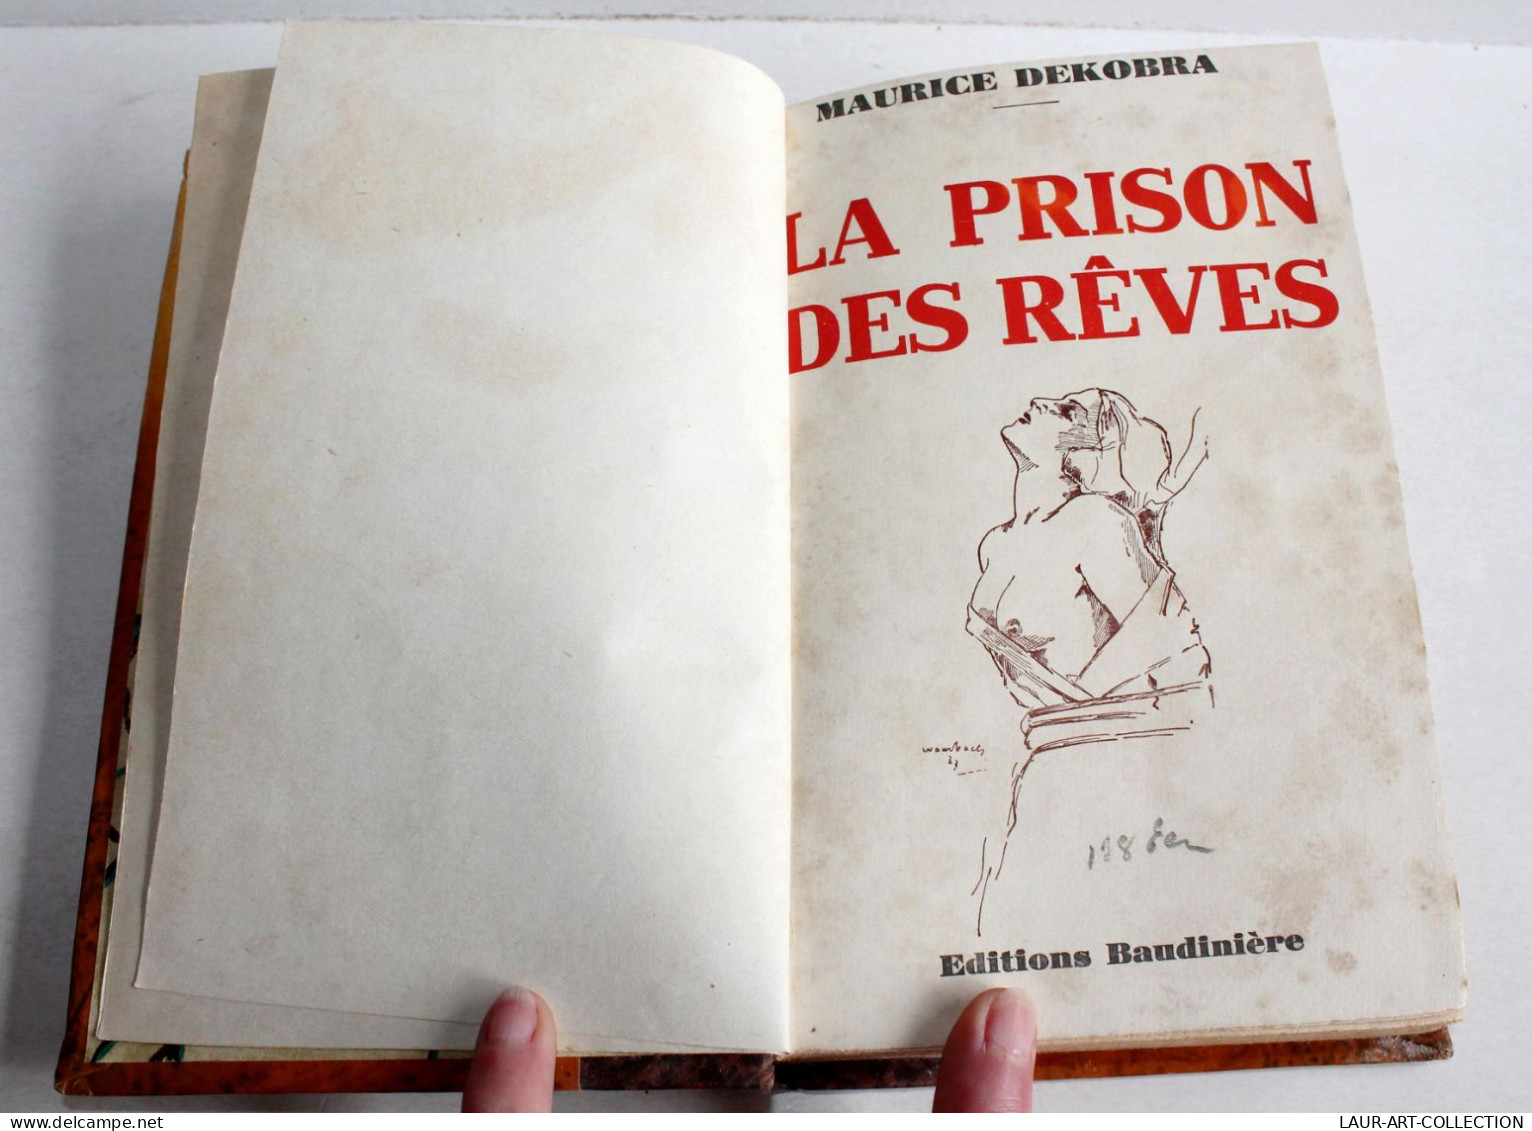 ENVOI D'AUTEUR MAURICE DEKOBRA EDITION ORIGINAL PRISON DES REVES 1934 BAUDINIERE / ANCIEN LIVRE XXe SIECLE (2204.36) - Libros Autografiados